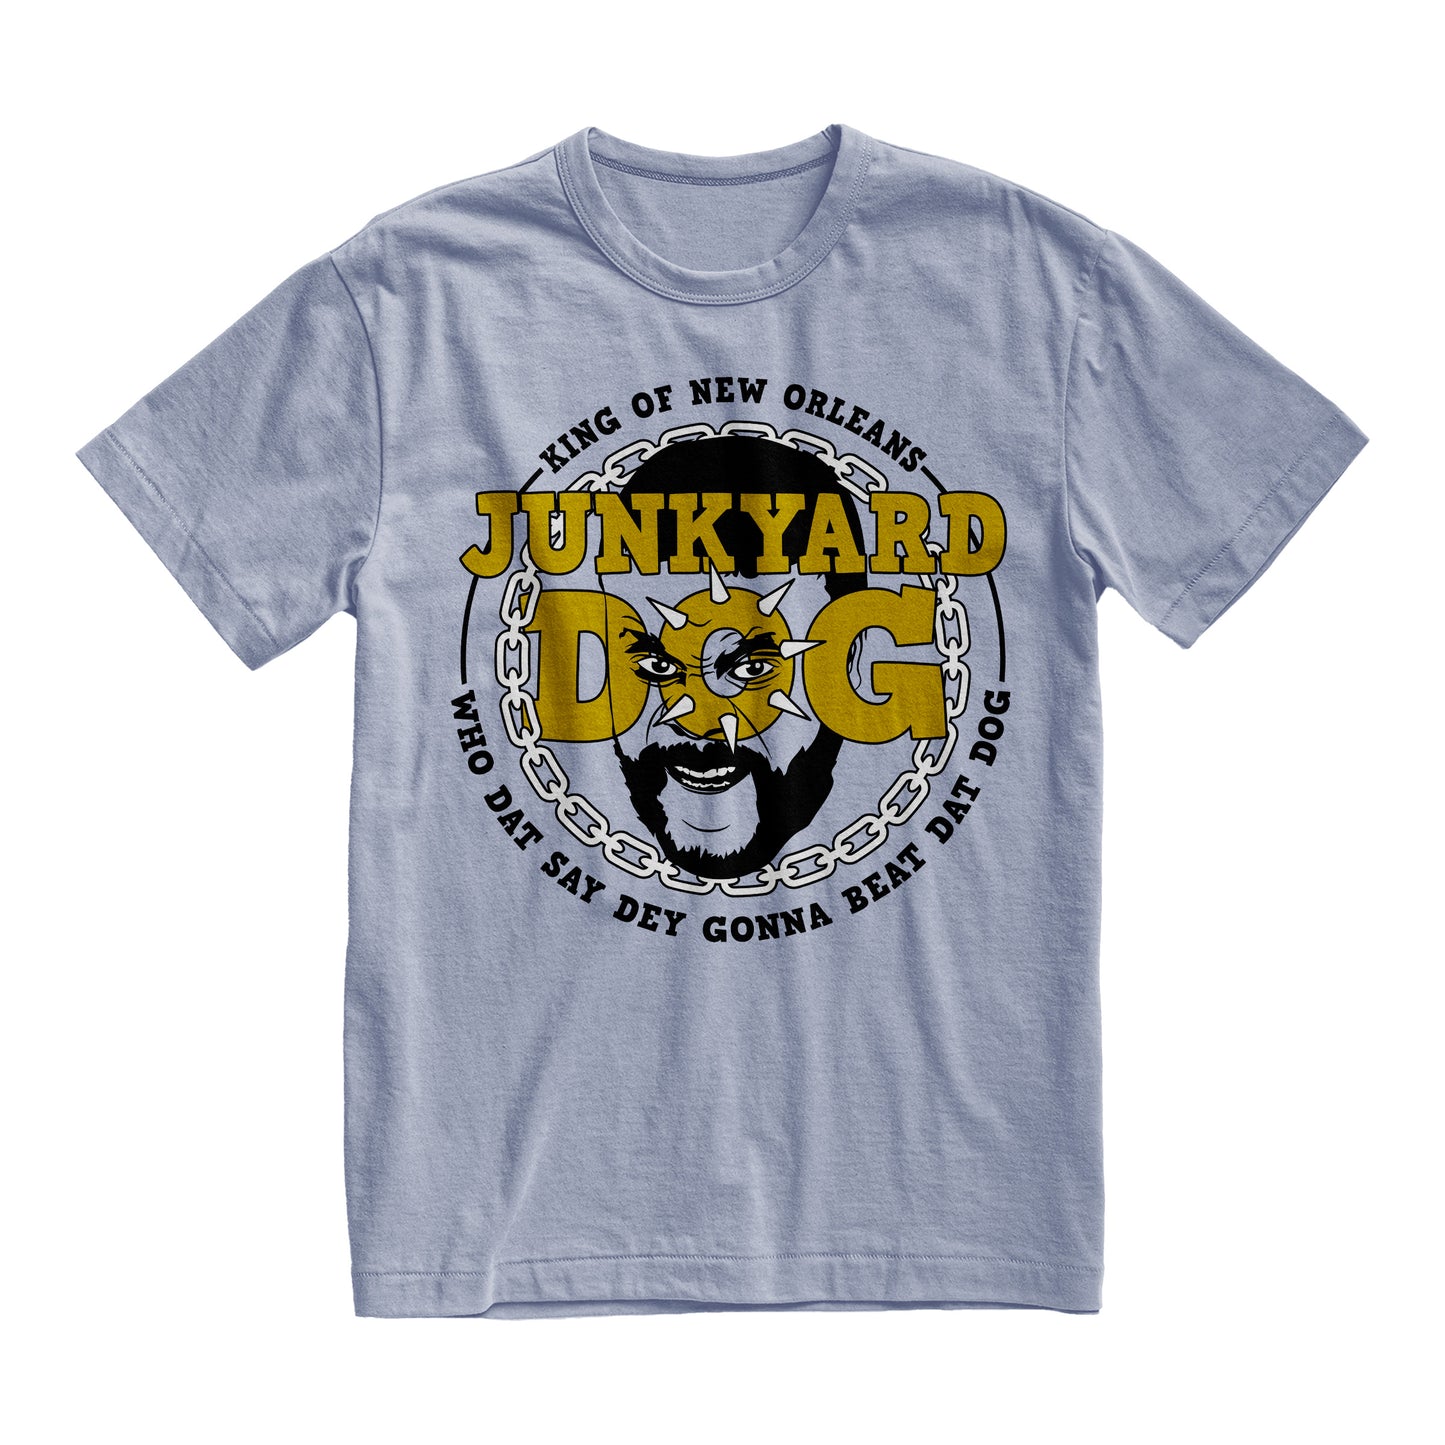 Junkyard Dog - King Of New Orleans Tee